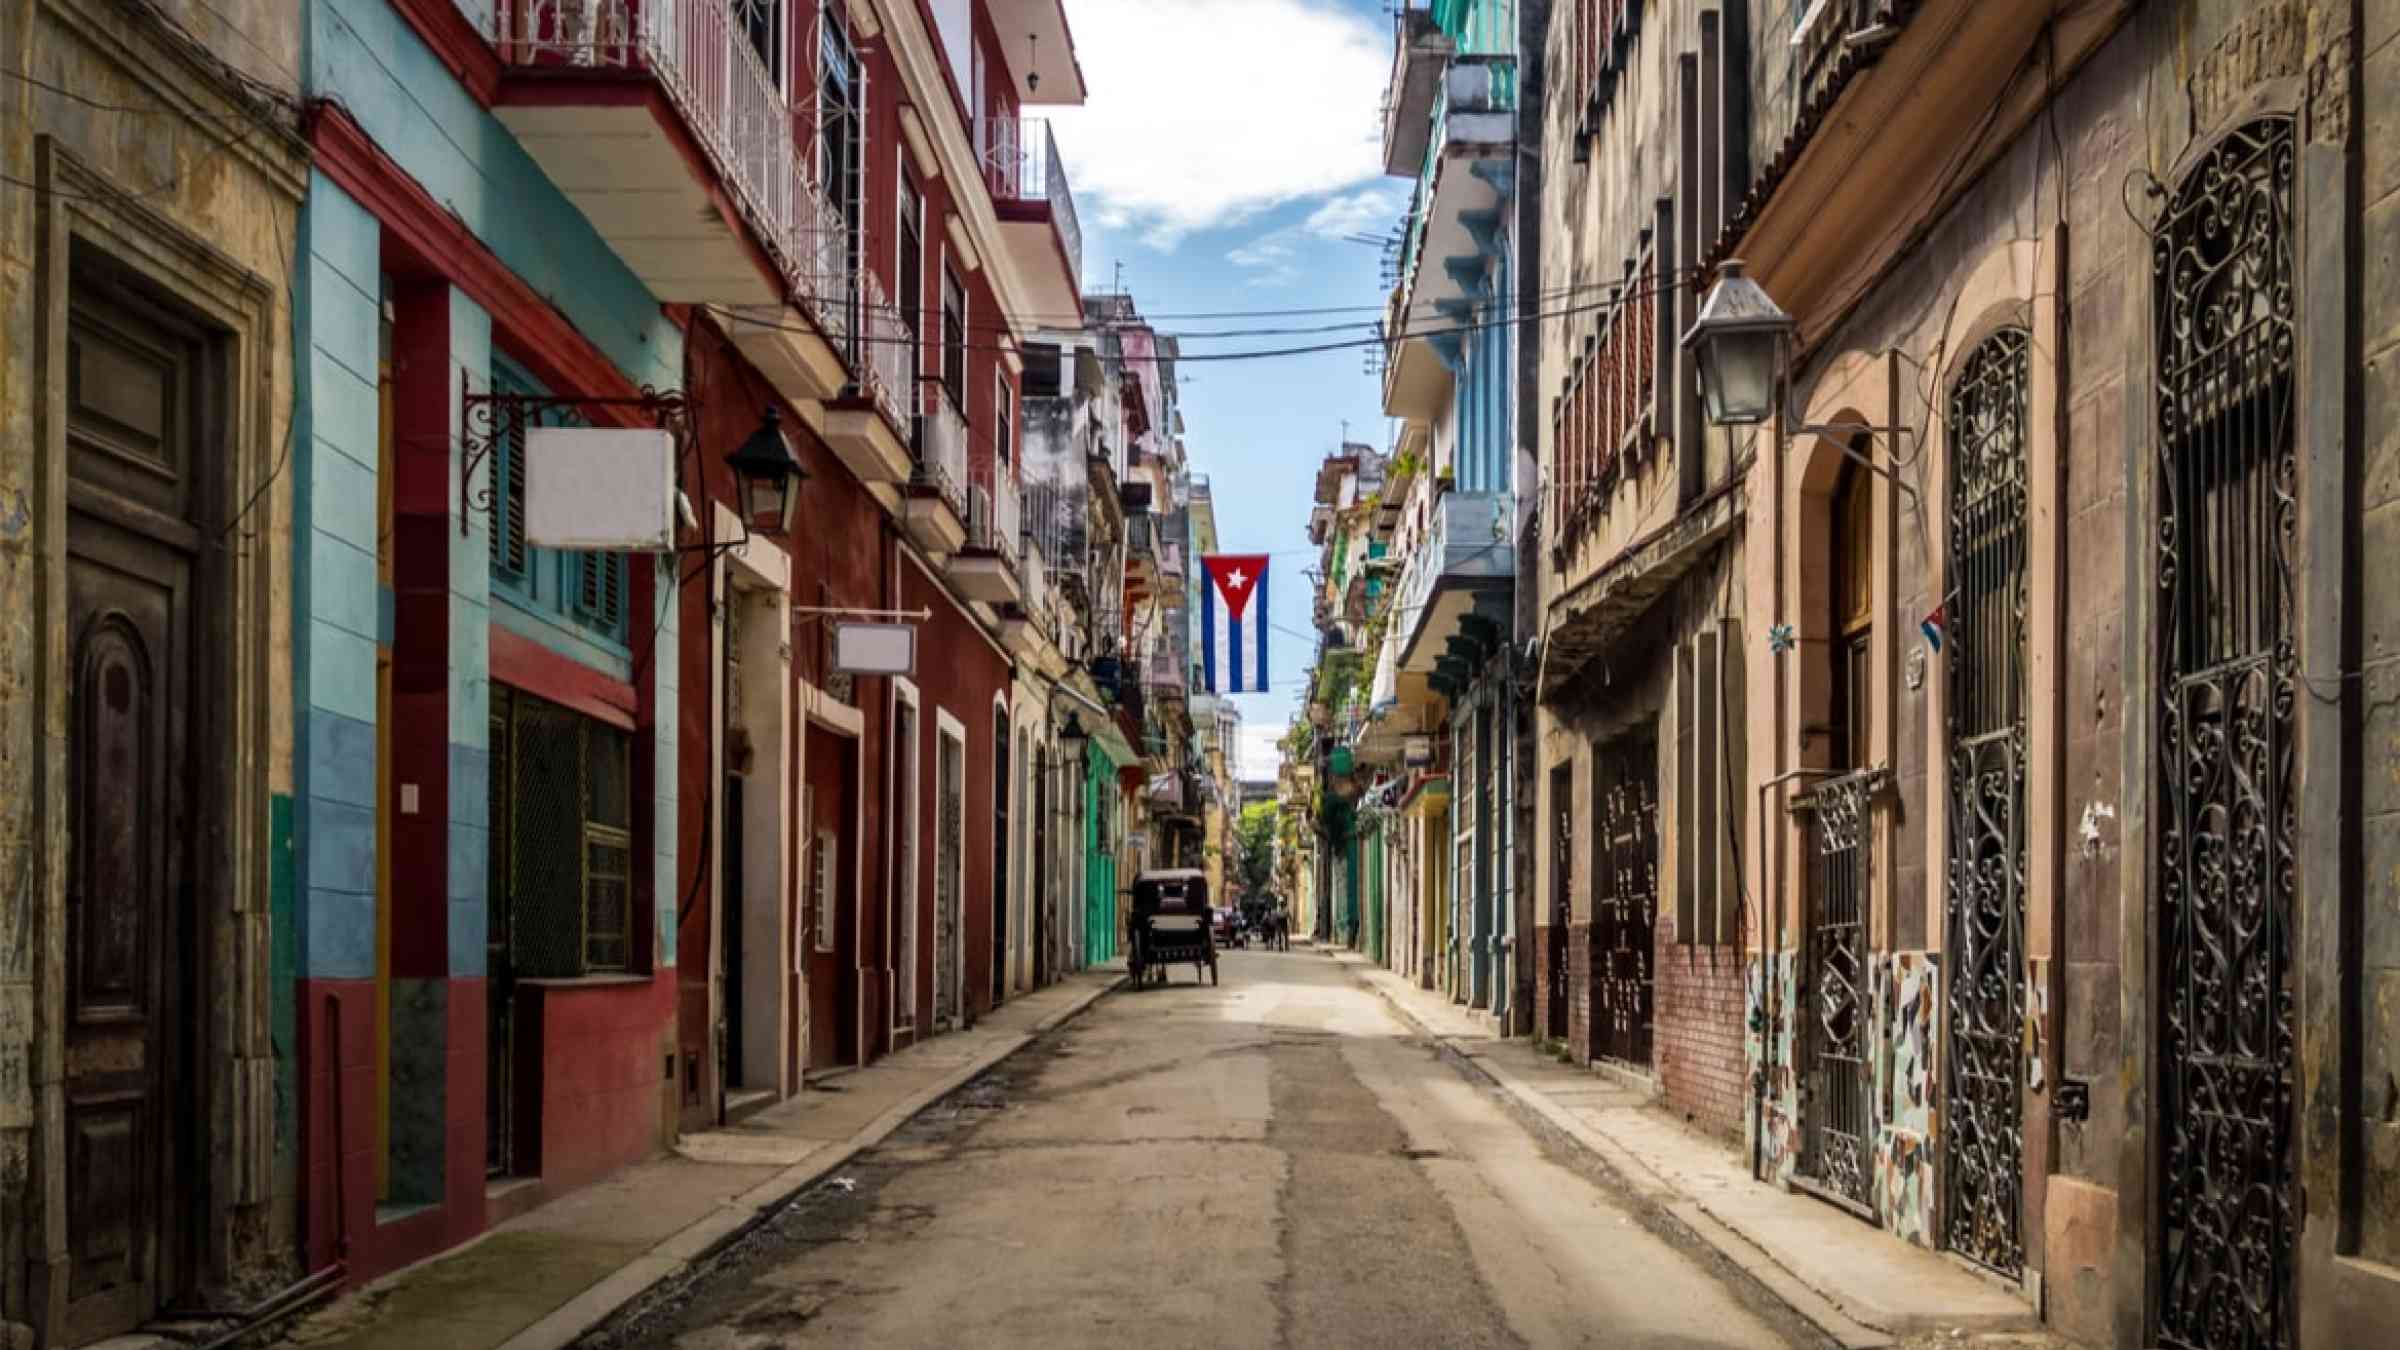 Street in old Havana, Cuba